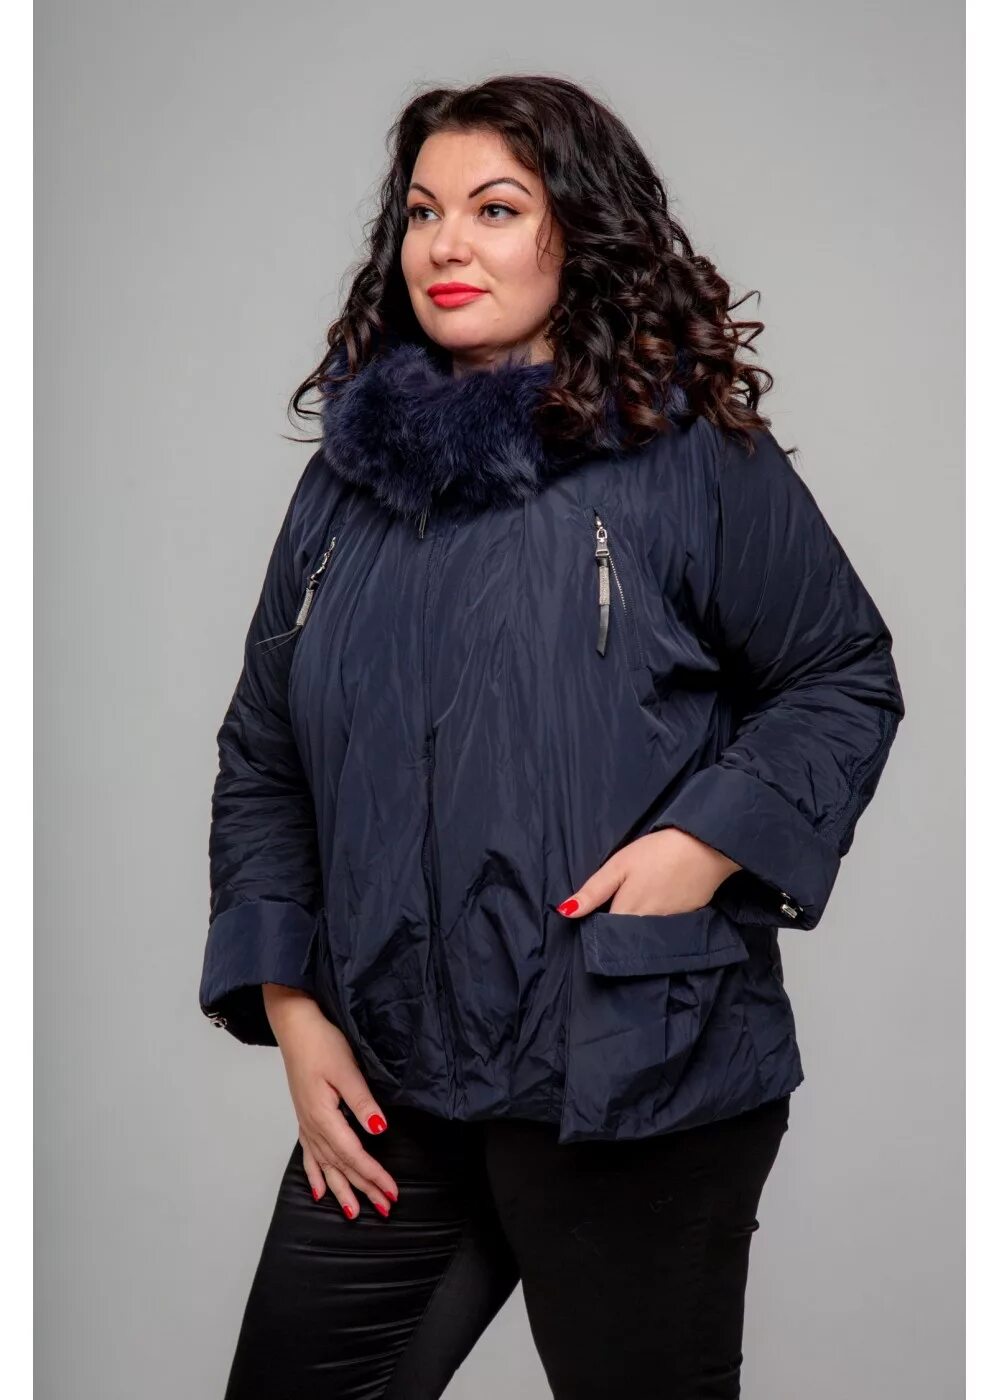 Mishel утепленная куртка 56 размер. Rufuete куртки. Rufuete collection женская куртка зимняя. Зимние куртки женские больших размеров.